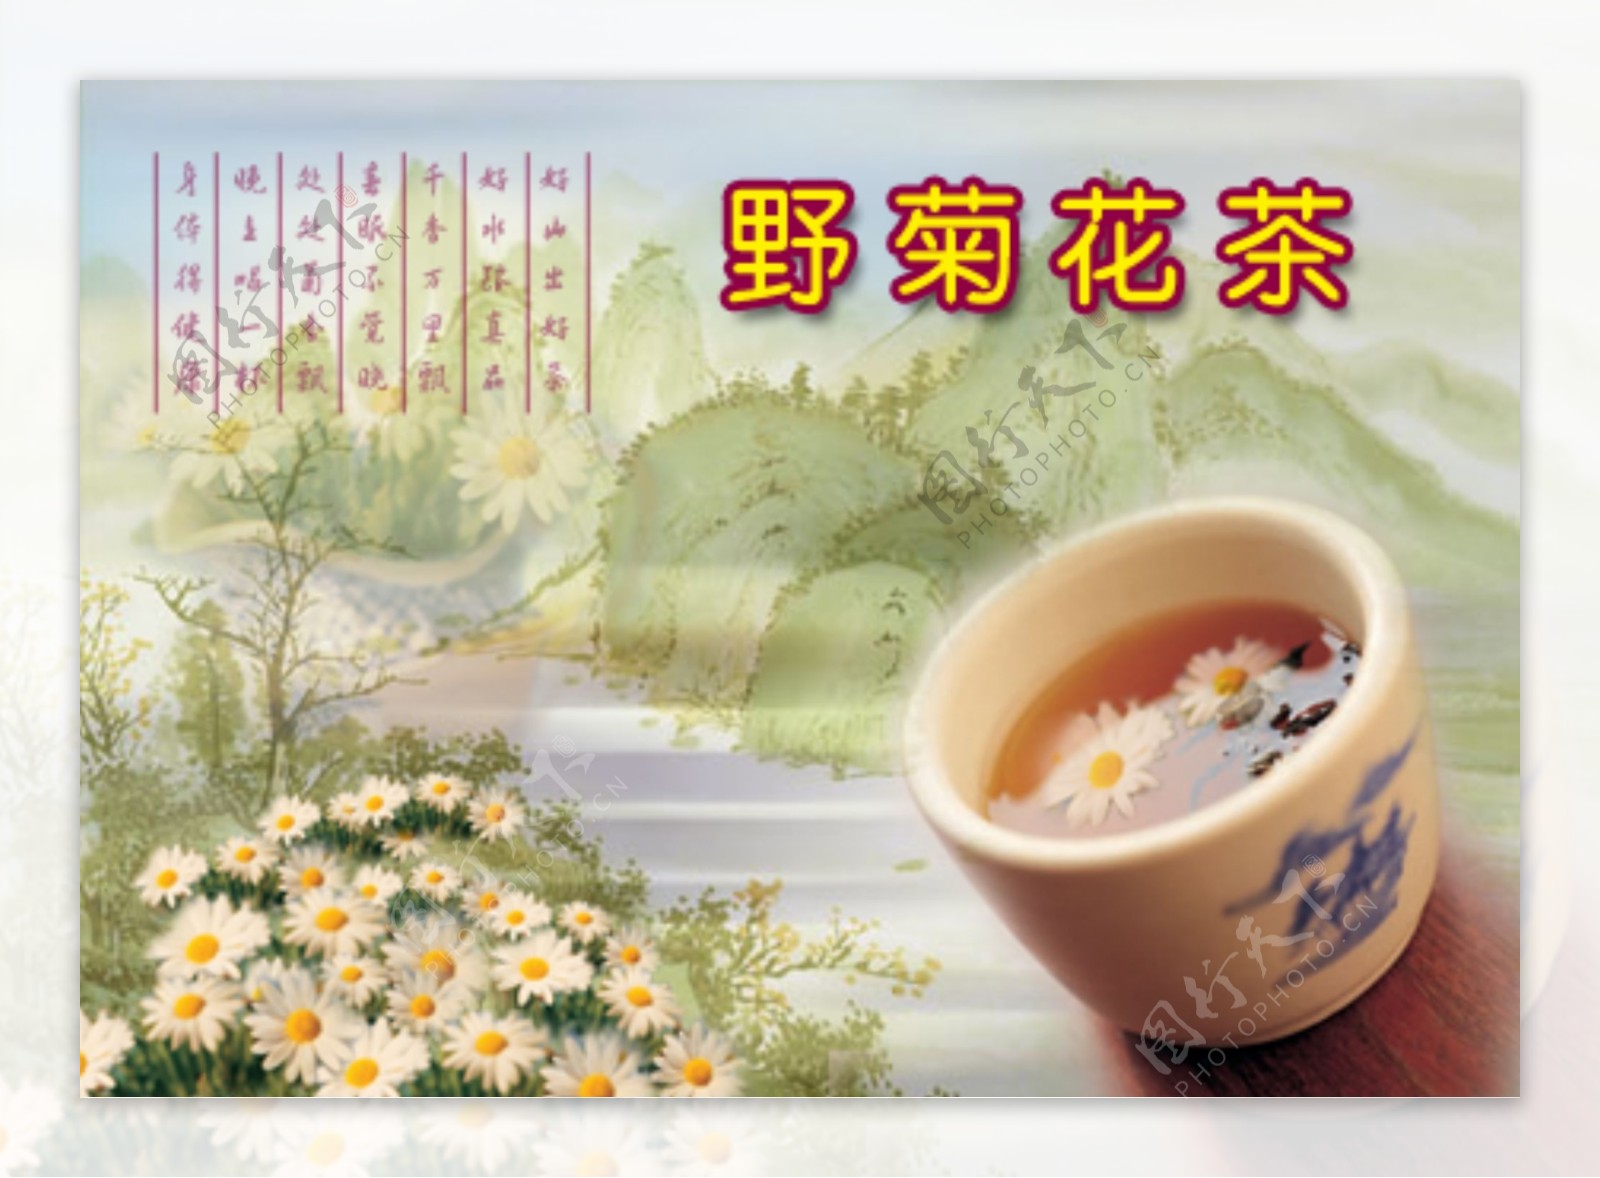 菊花茶系列